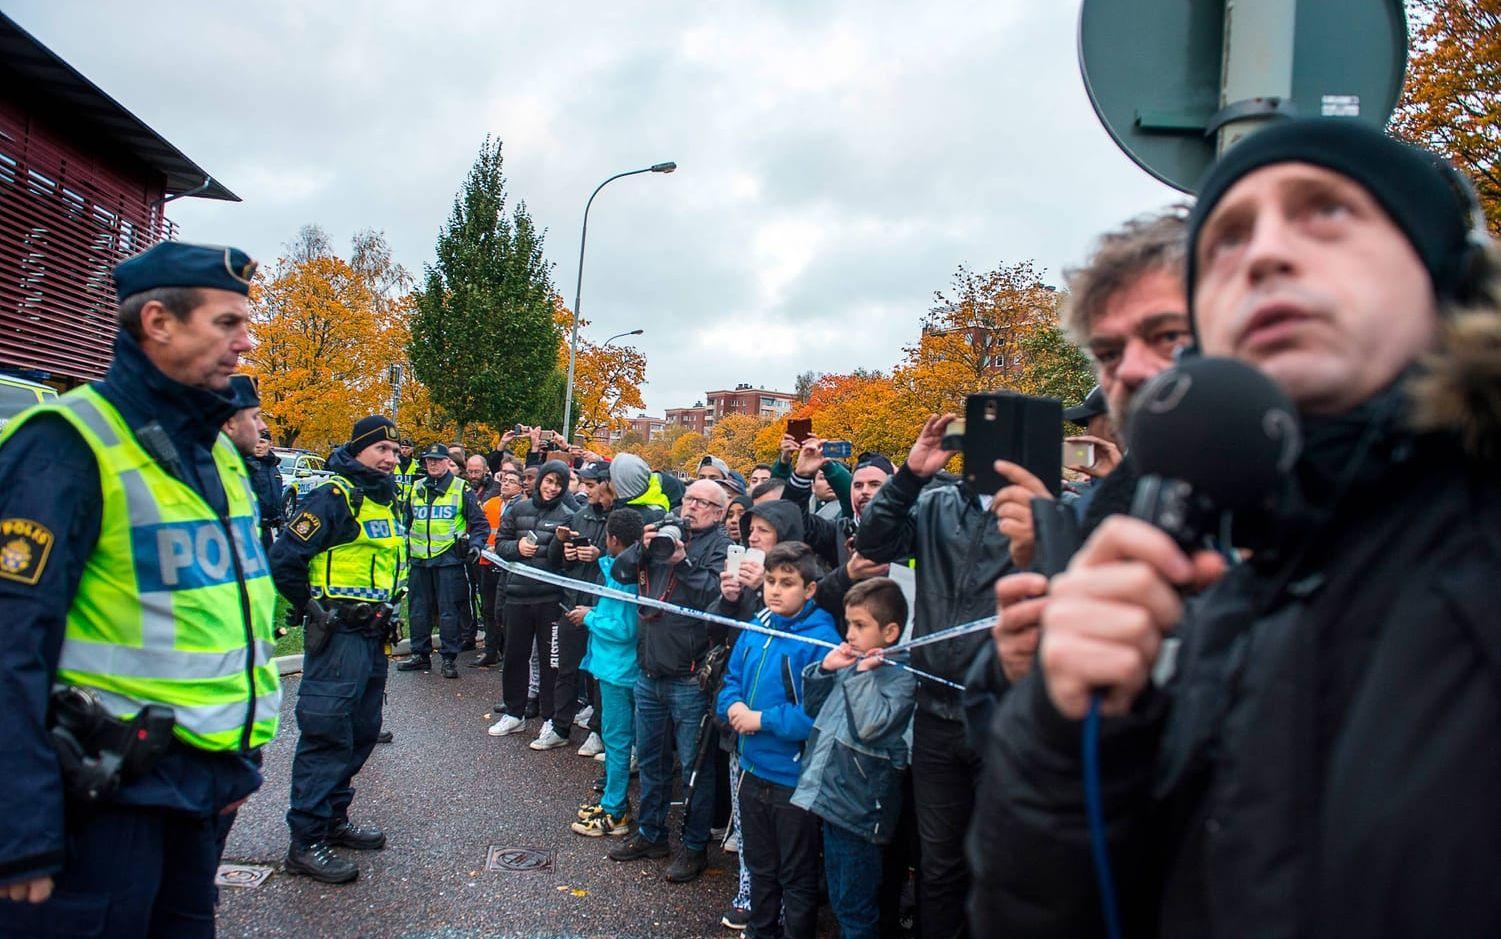 Snabbt samlades flera hundra oroliga människor utanför Kronan. Bild: Stefan Bennhage